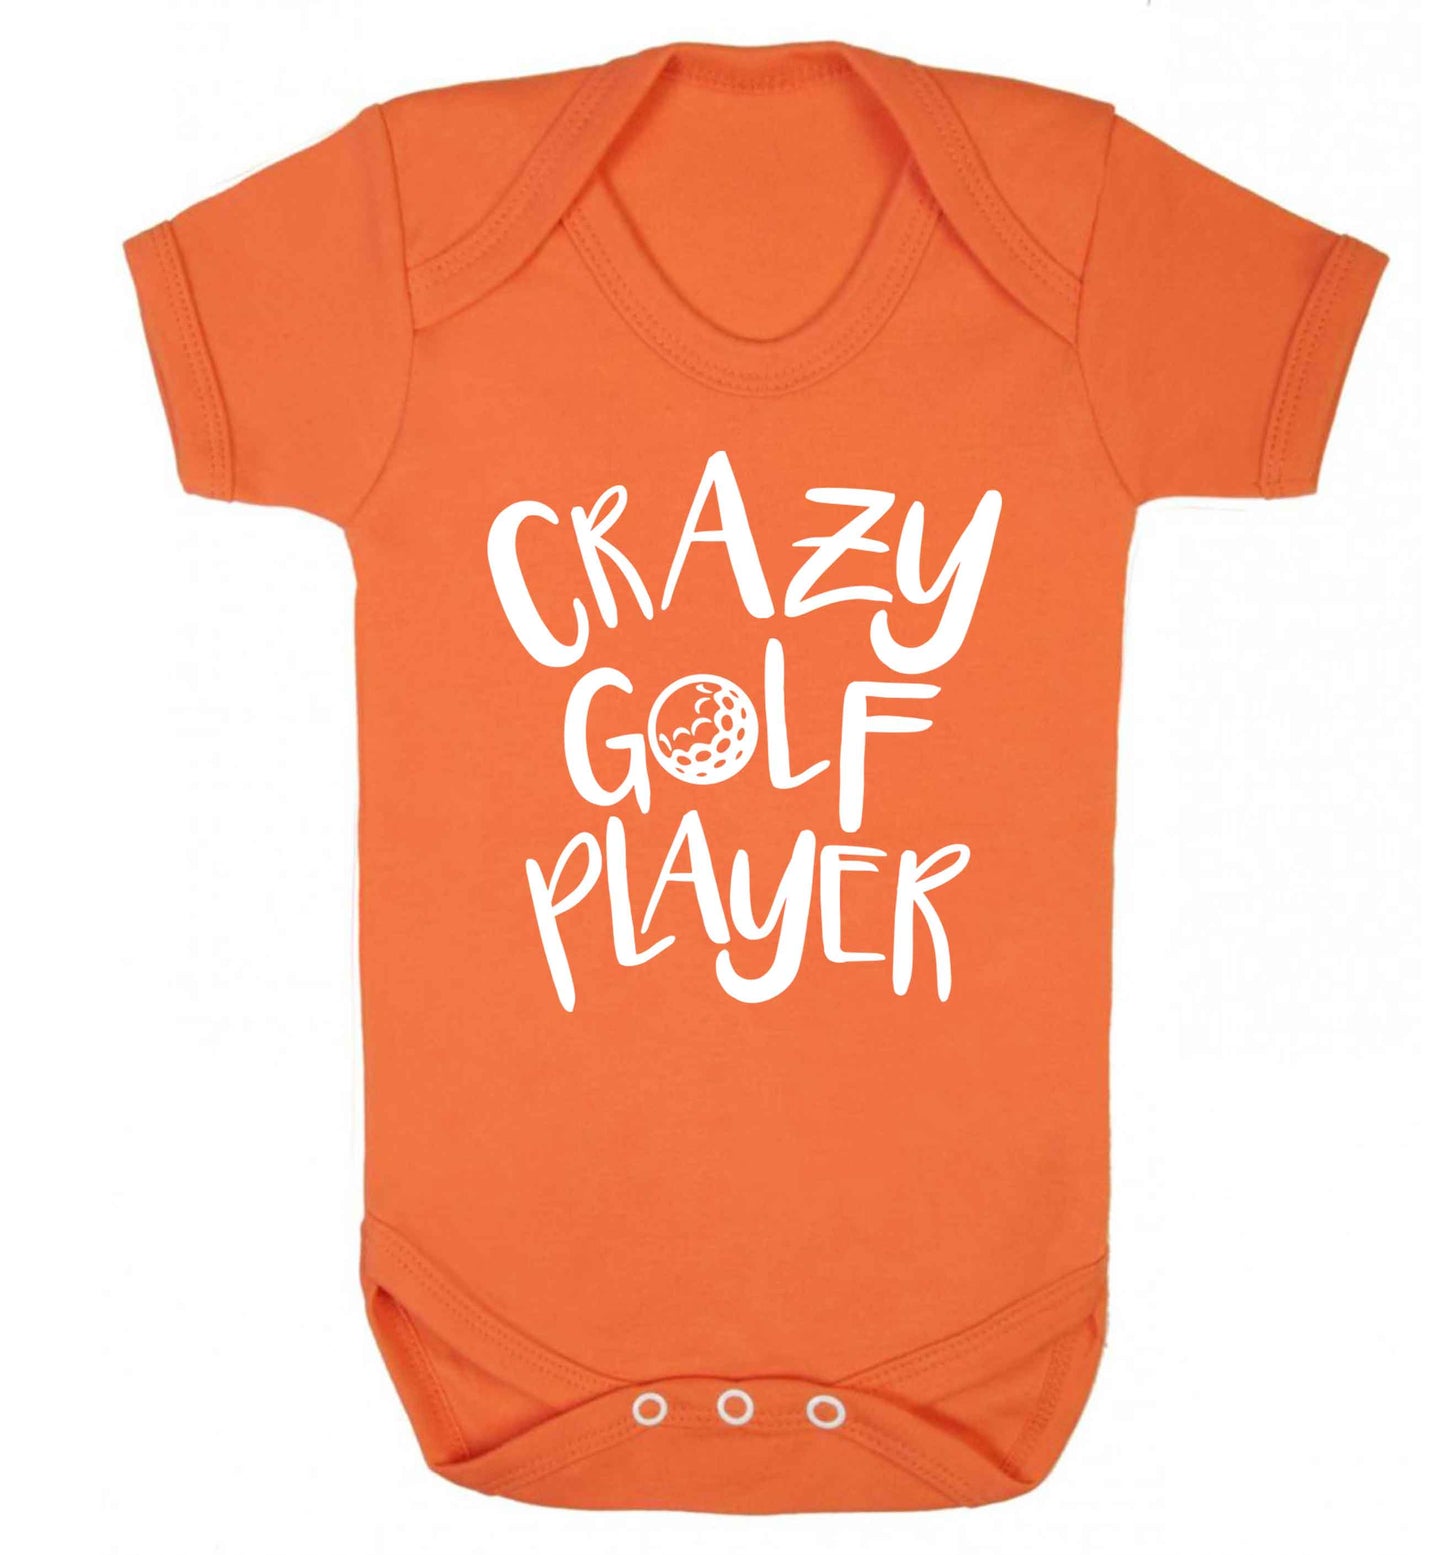 Crazy golf player Baby Vest orange 18-24 months